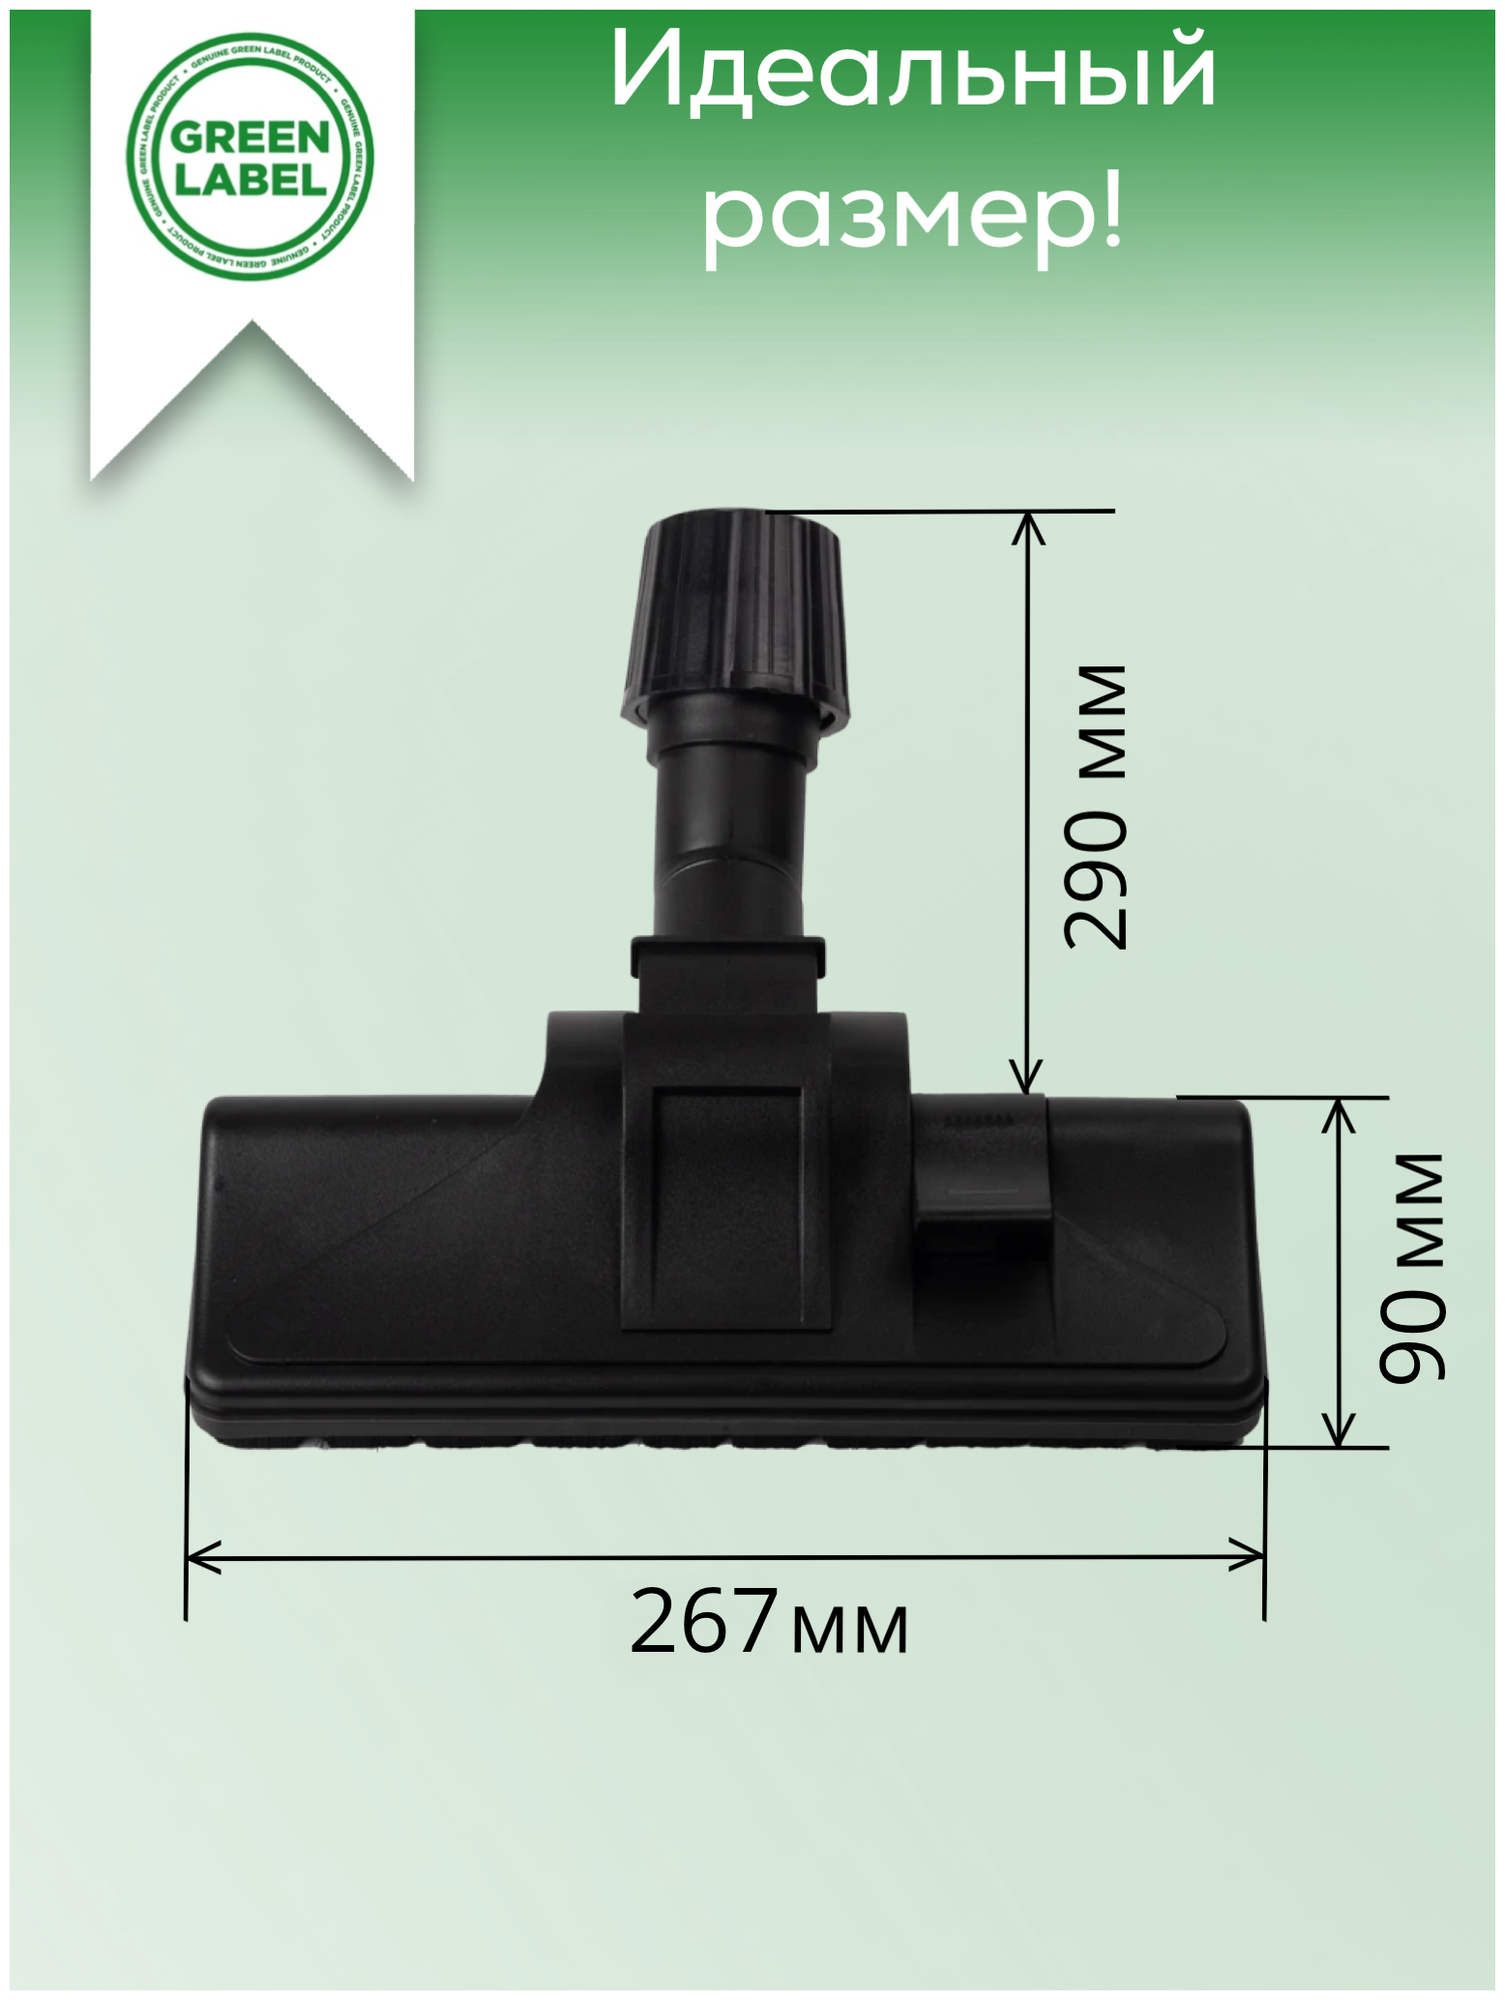 Green Label, Комбинированная щетка-насадка с универсальным зажимом 30-37мм для любых напольных покрытий (паркета, паркетной доски, ламината, плитки)